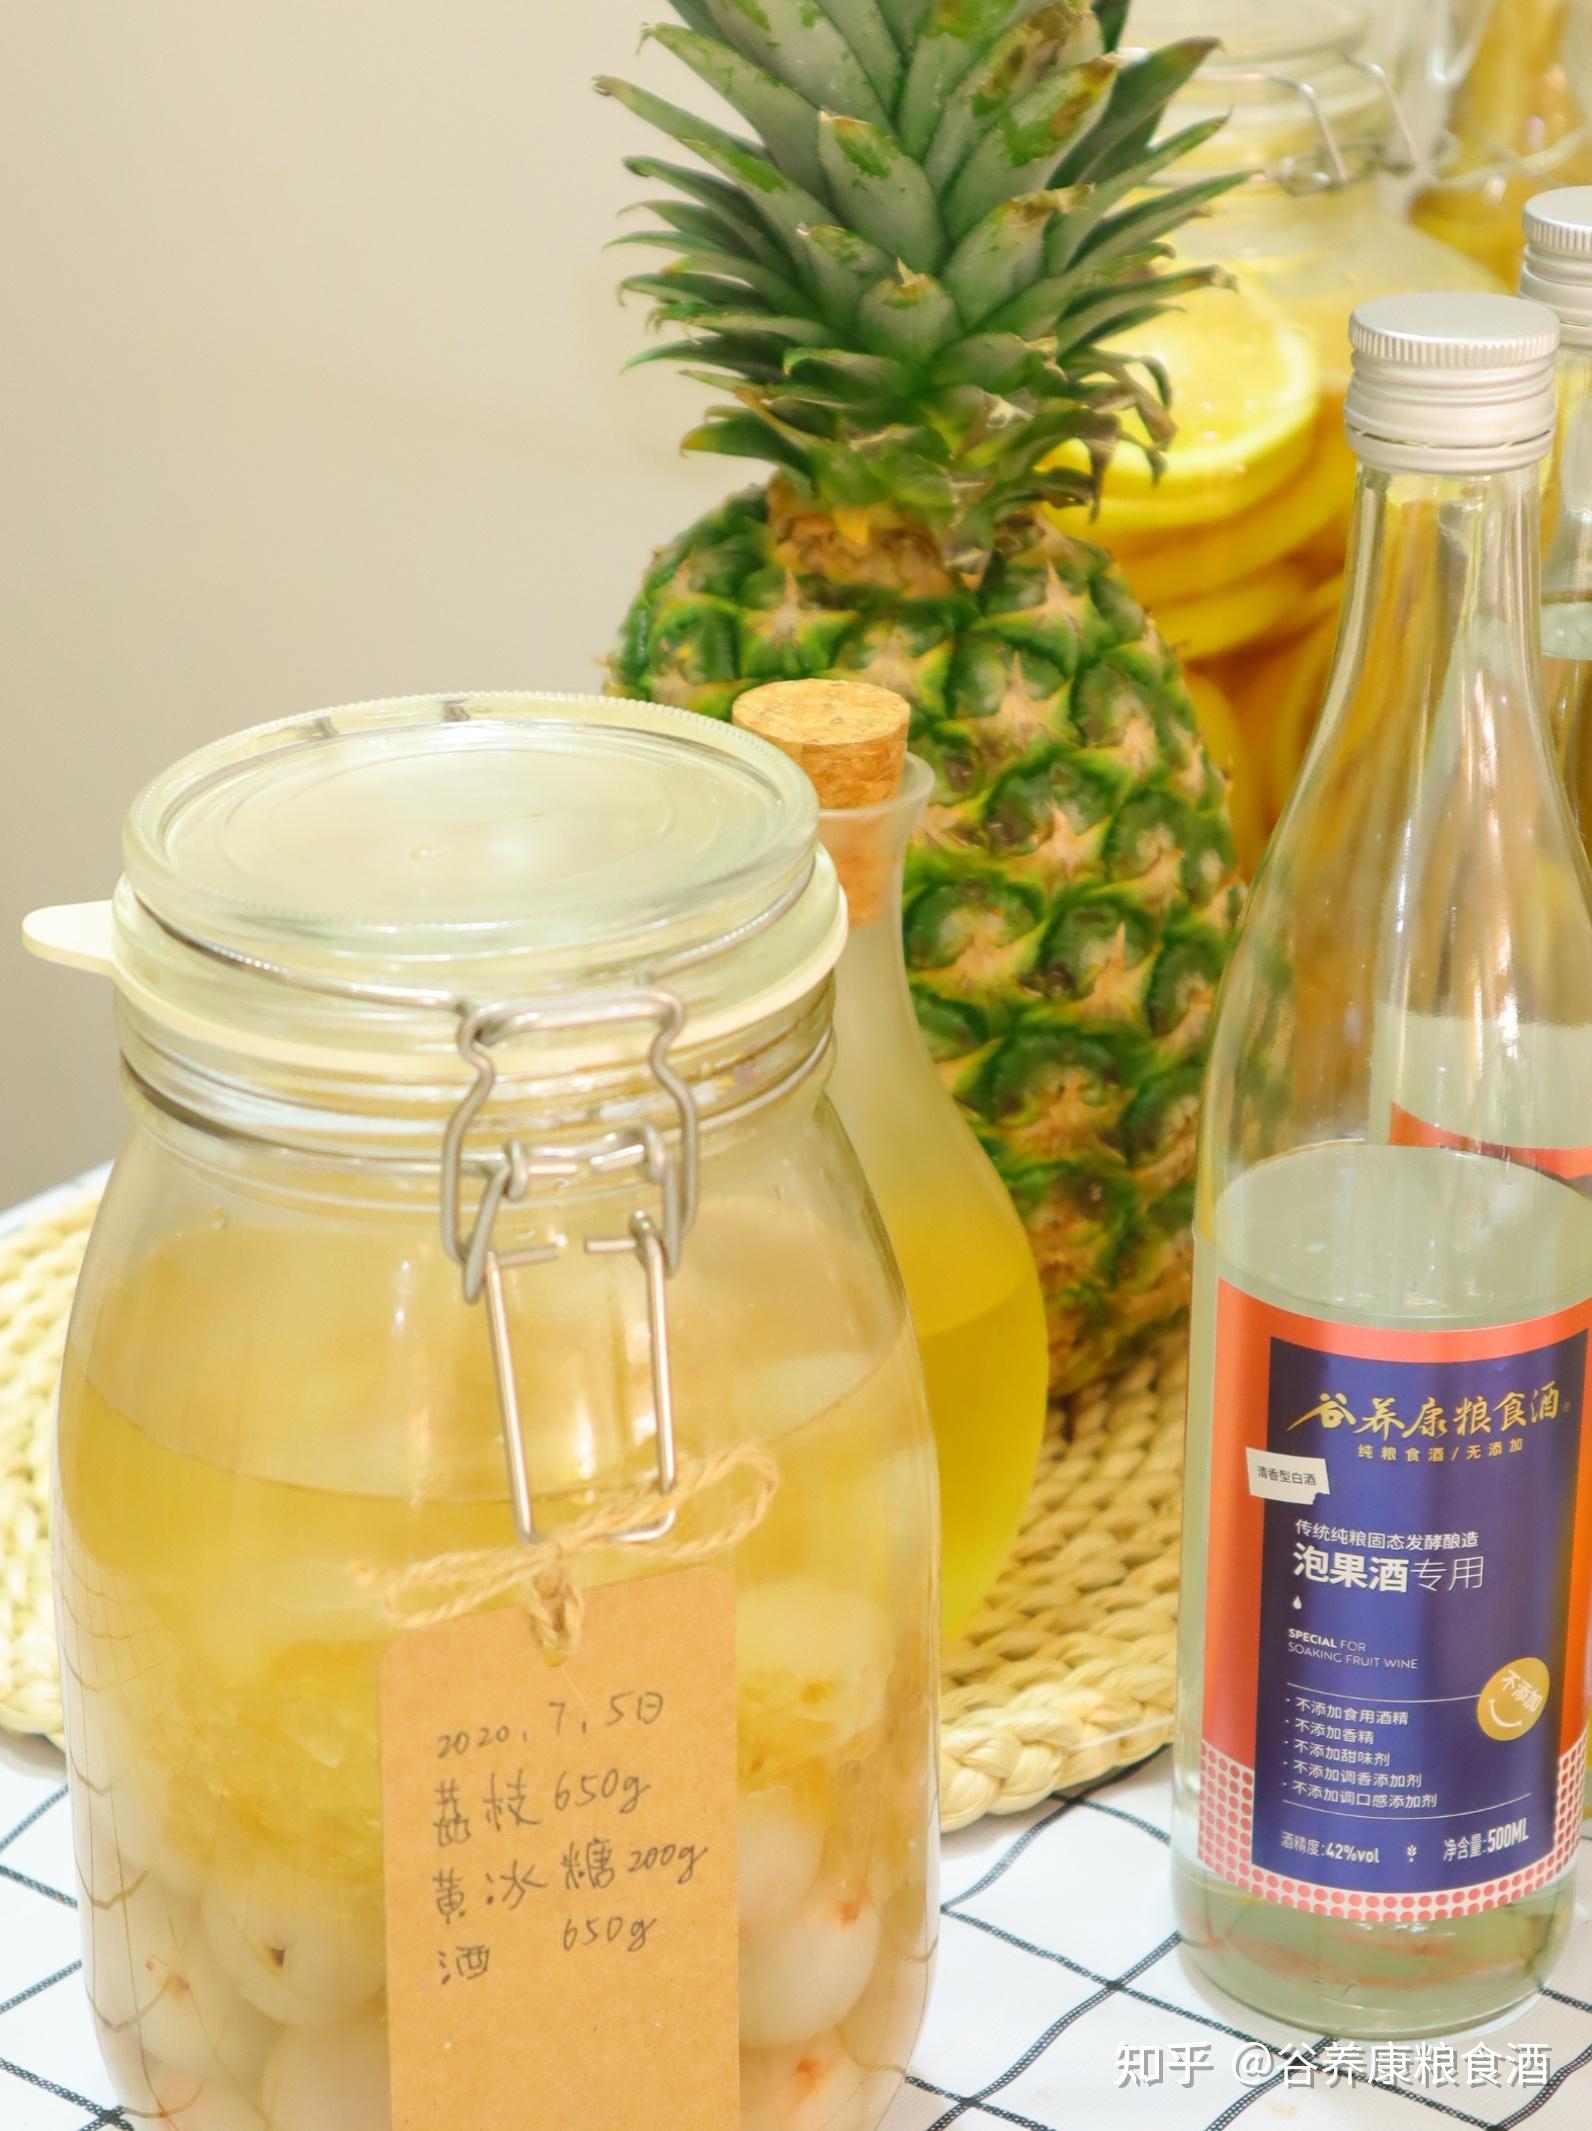 居家自制菠萝酒的做法菠萝如何泡酒快来试试吧